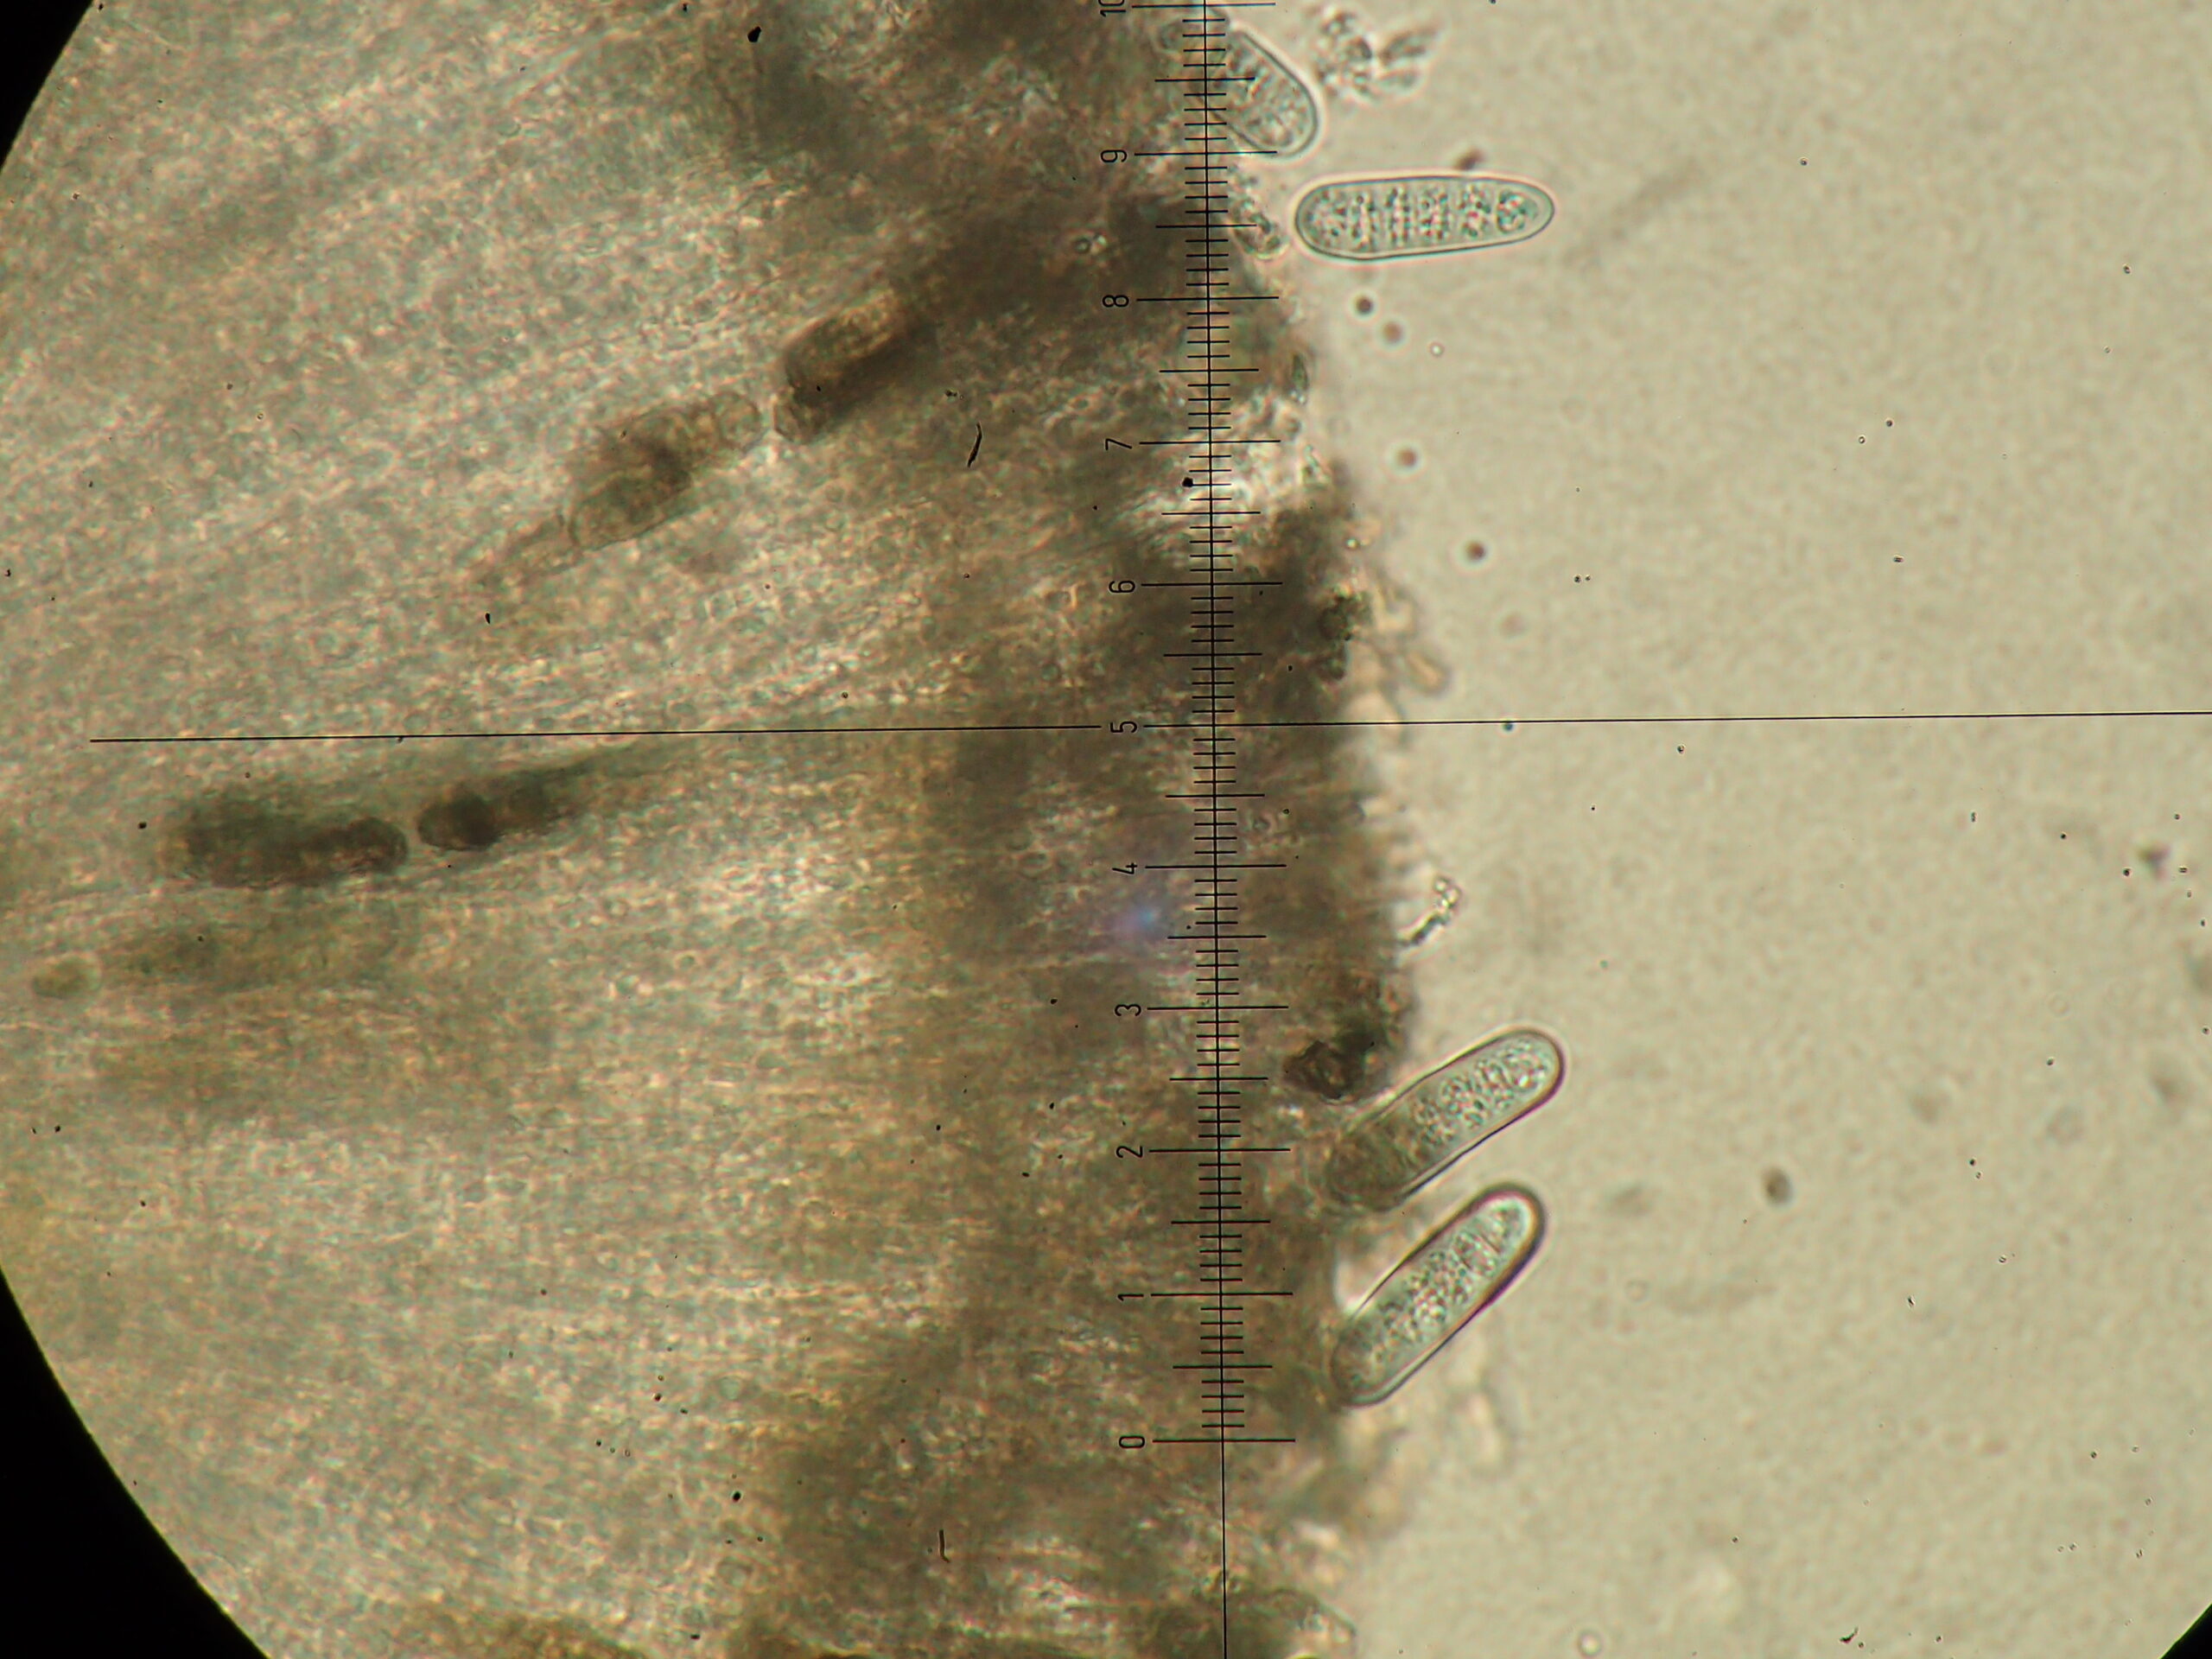 Phaeographis smithii spores